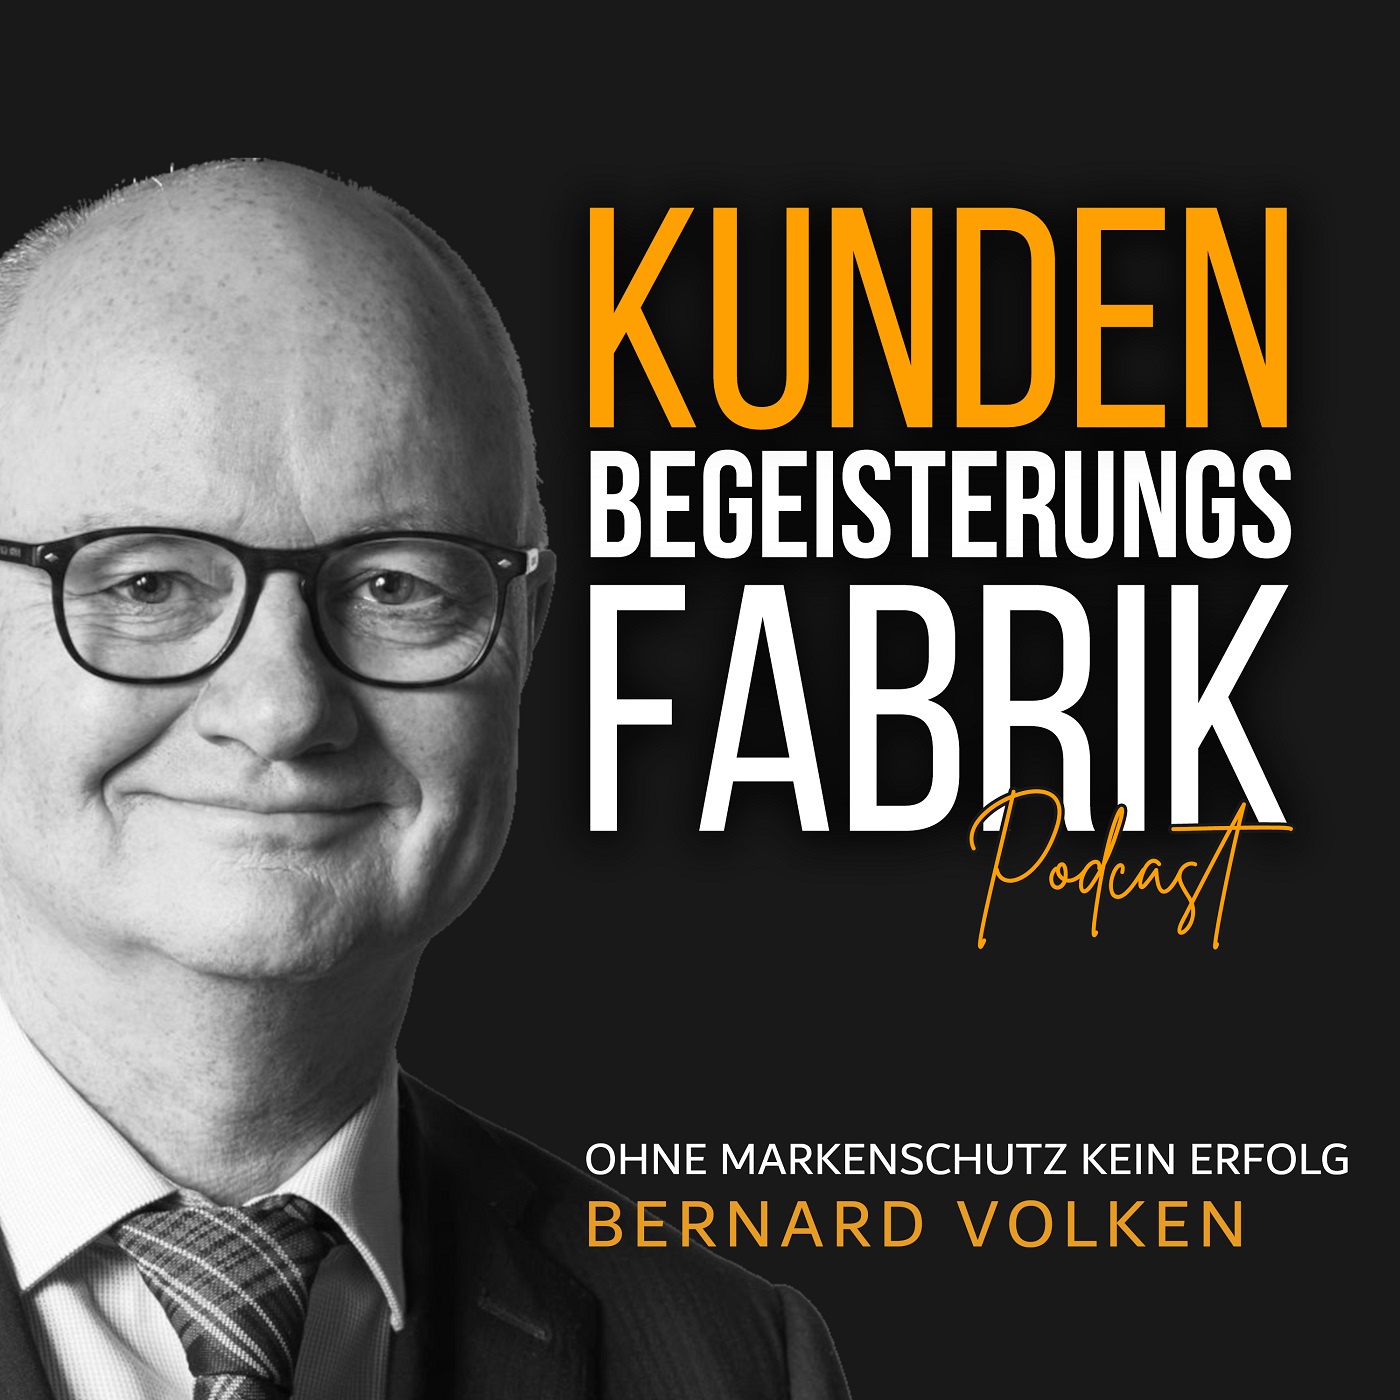 Bernard Volken: Ohne Markenschutz kein Erfolg